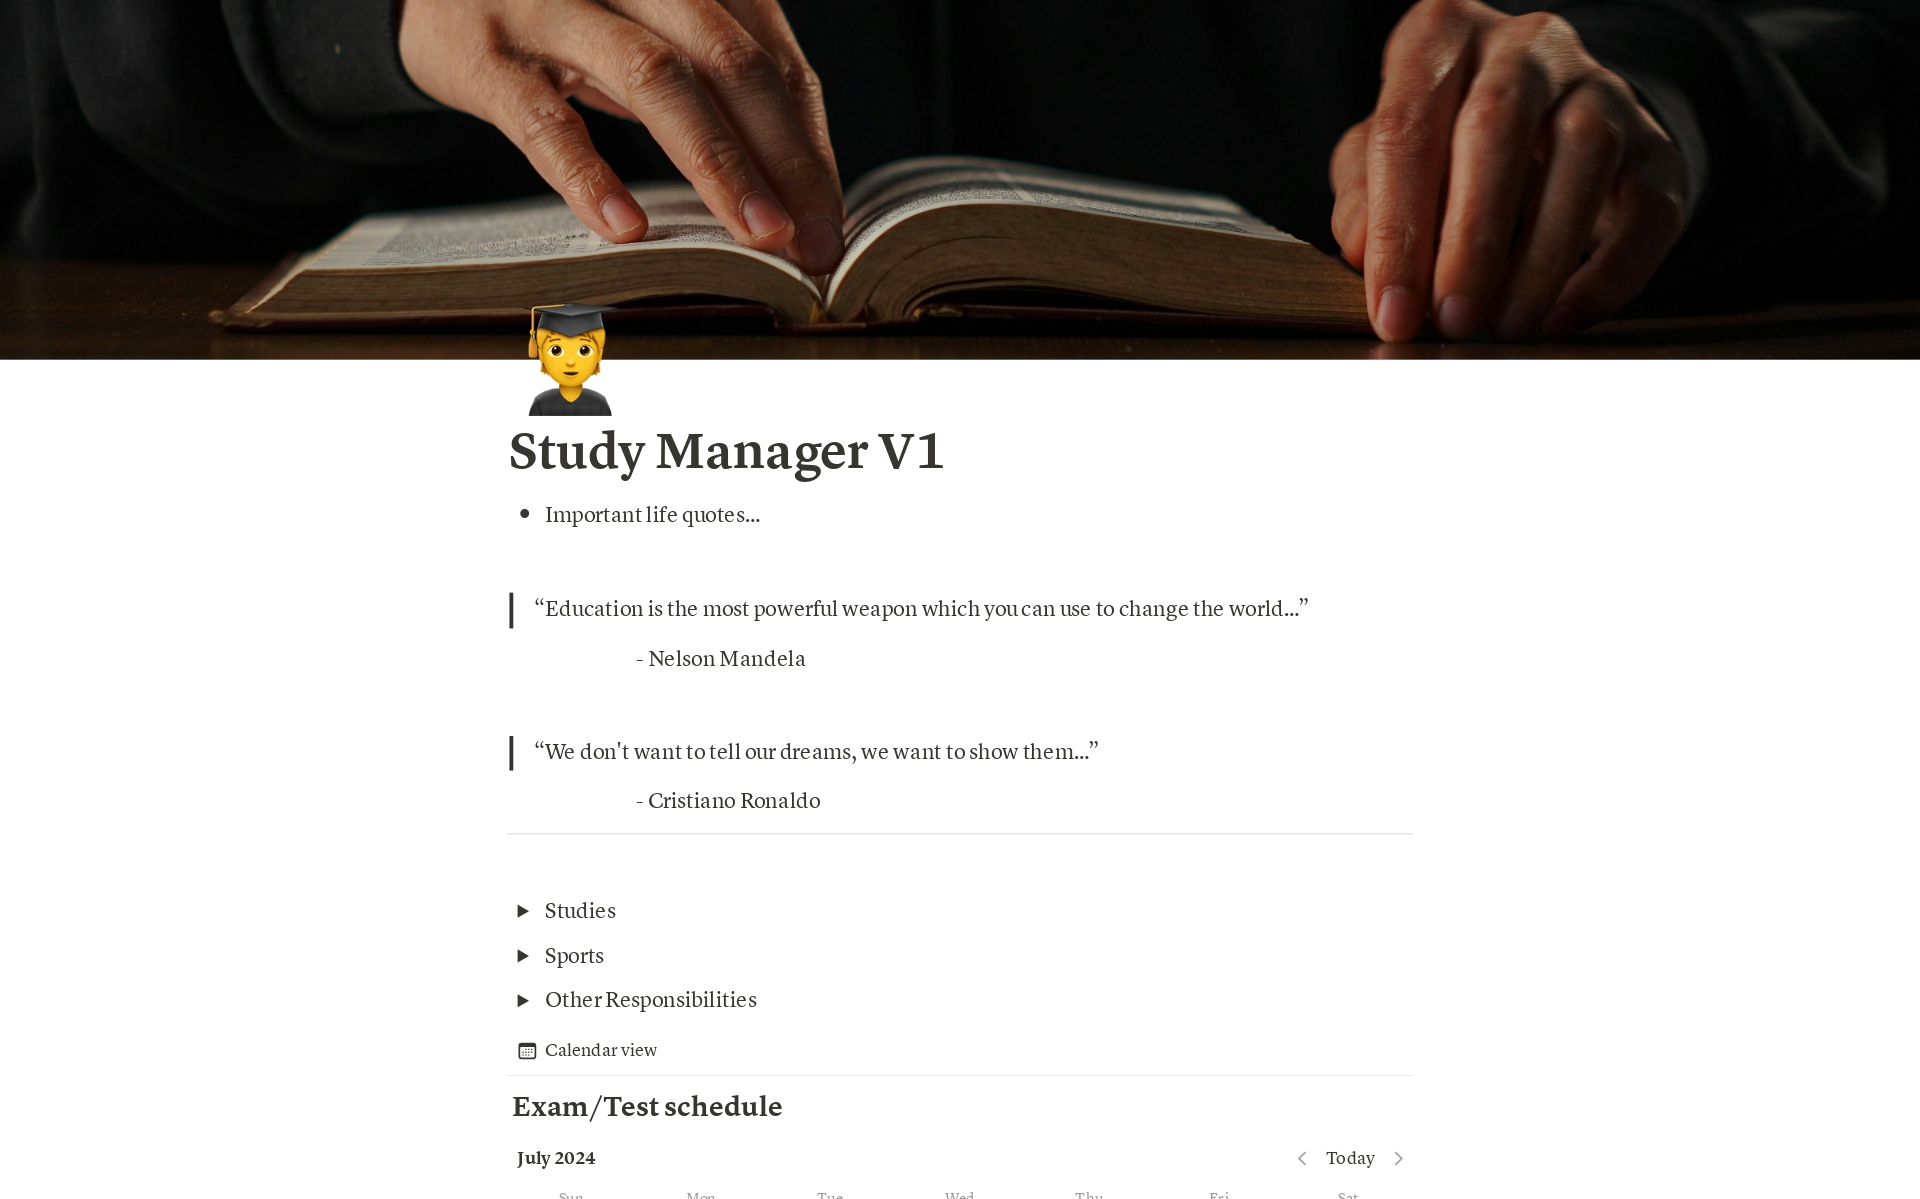 Vista previa de una plantilla para Study Manager V1 